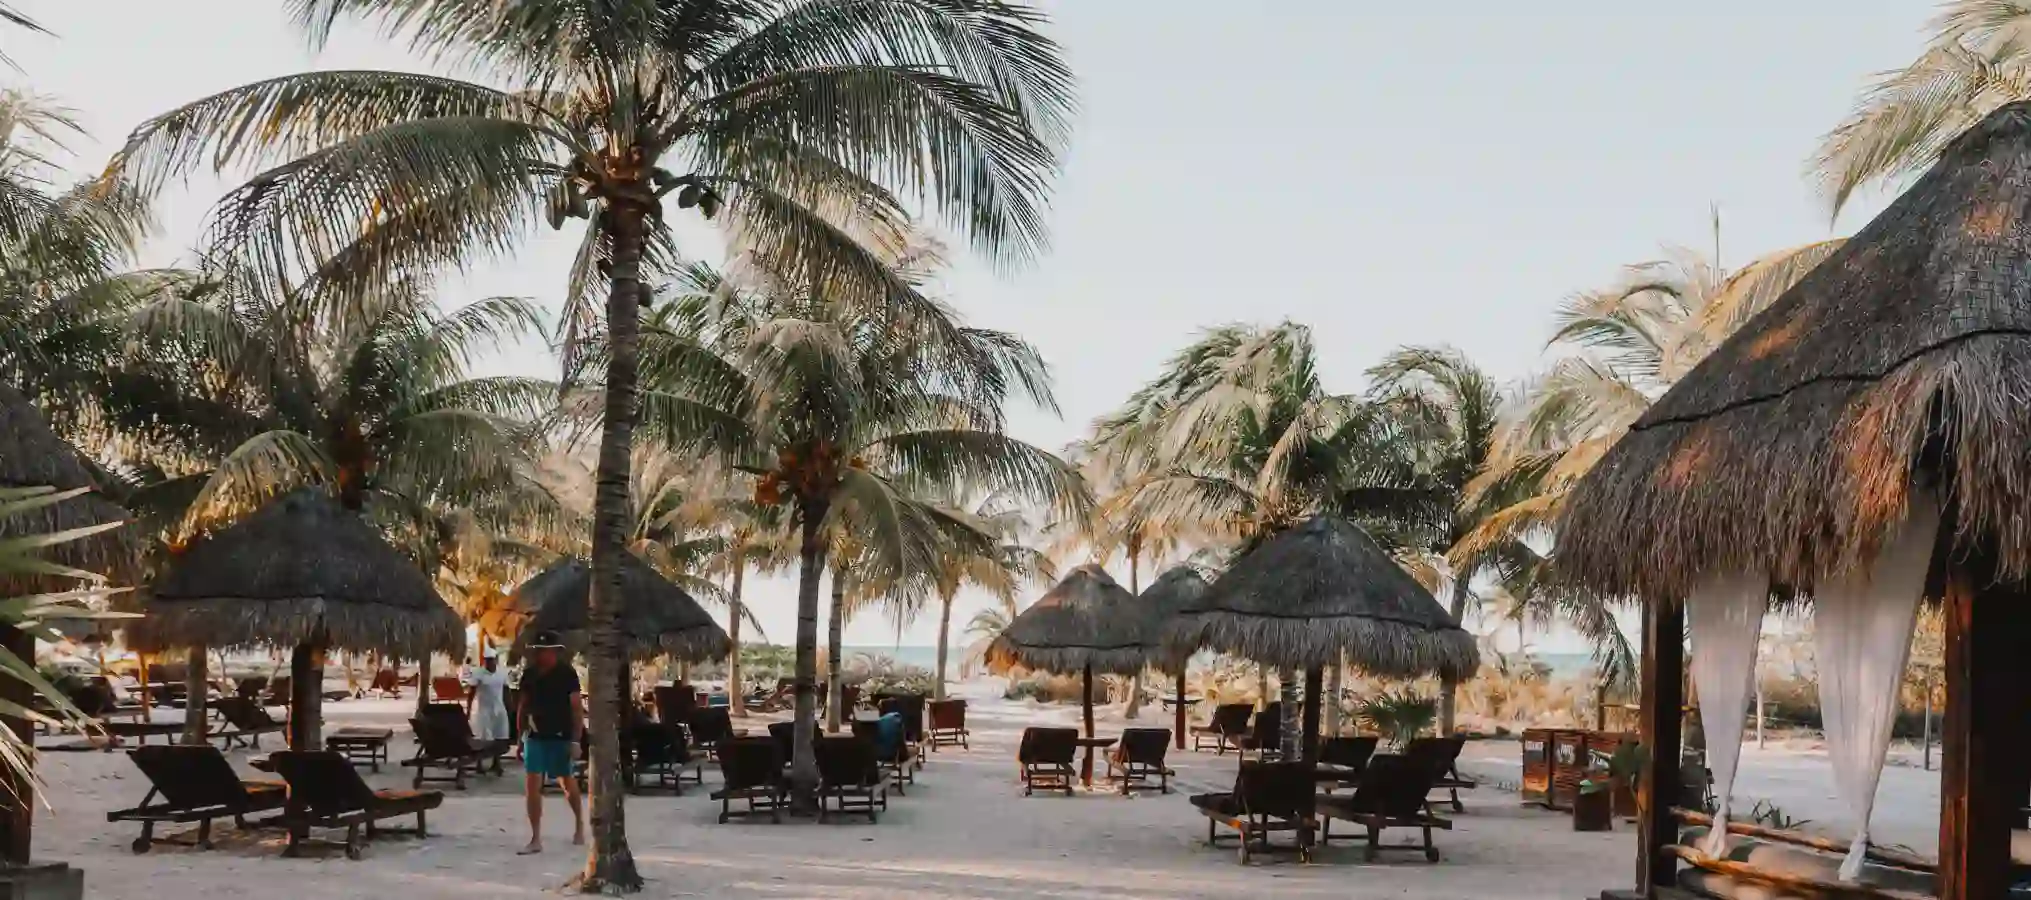 Пляж с пальмами и стульями